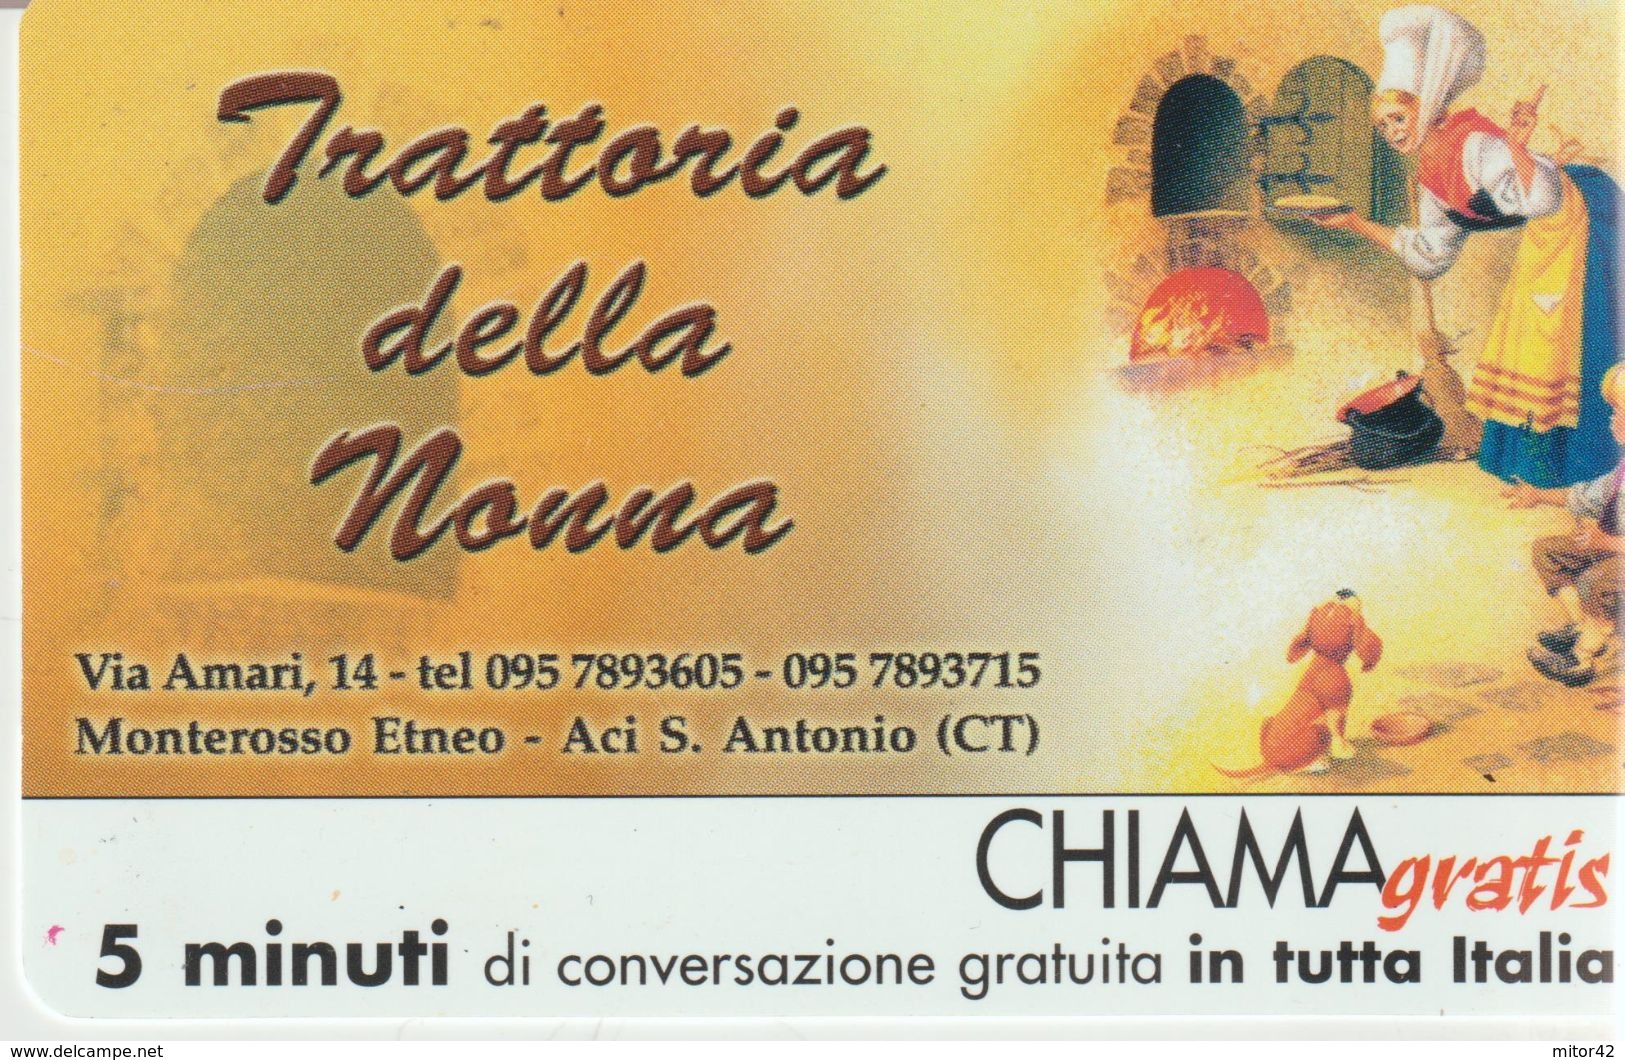 60-Chiama-gratis-Trattoria Della Nonna-Monterosso Etneo-Aci S.Antonio-Catania-Nuova - Usages Spéciaux